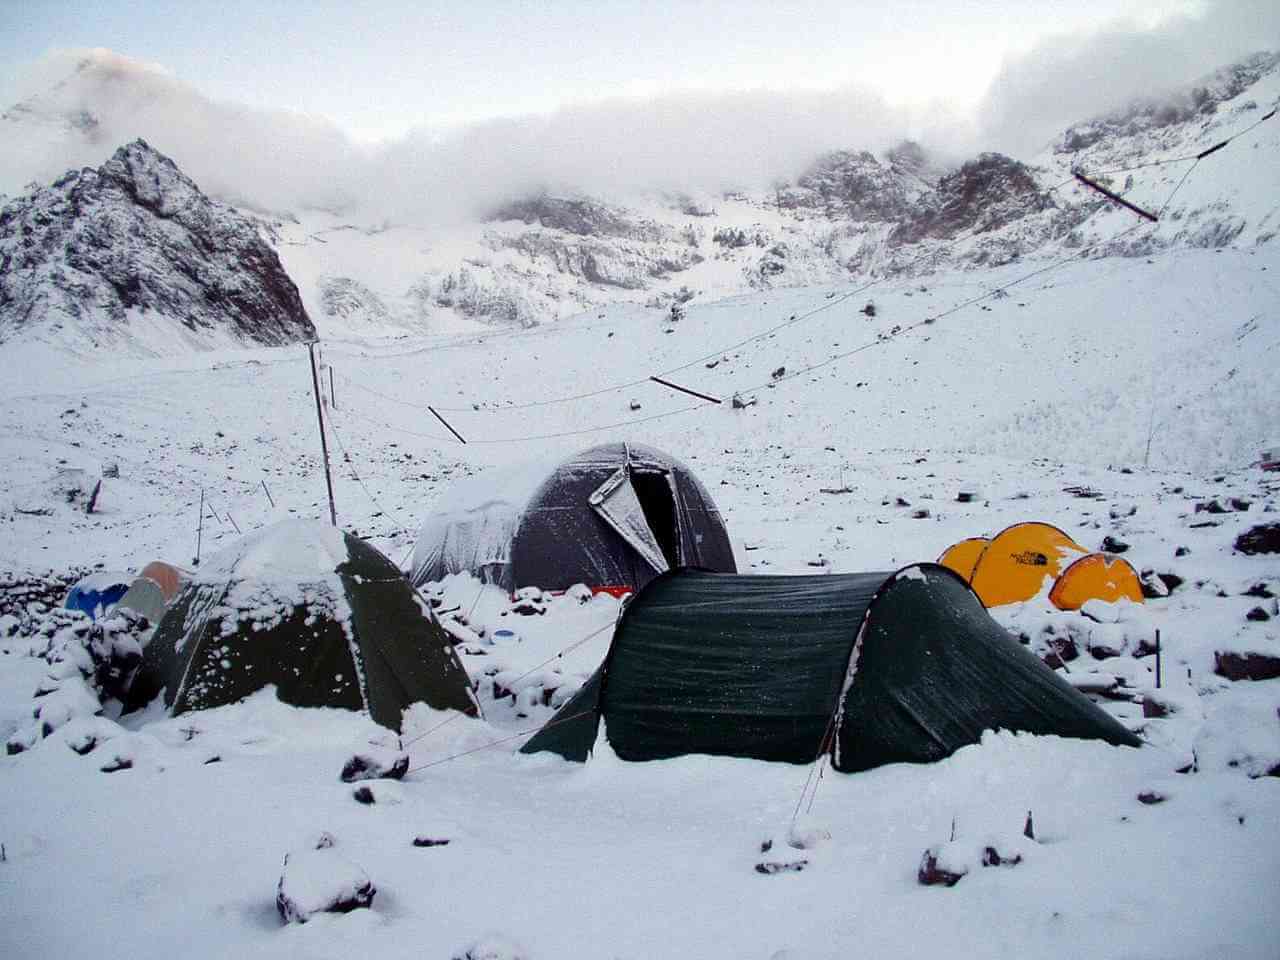 Obóz Berlin - najwyższy szczyt Południowej Ameryki